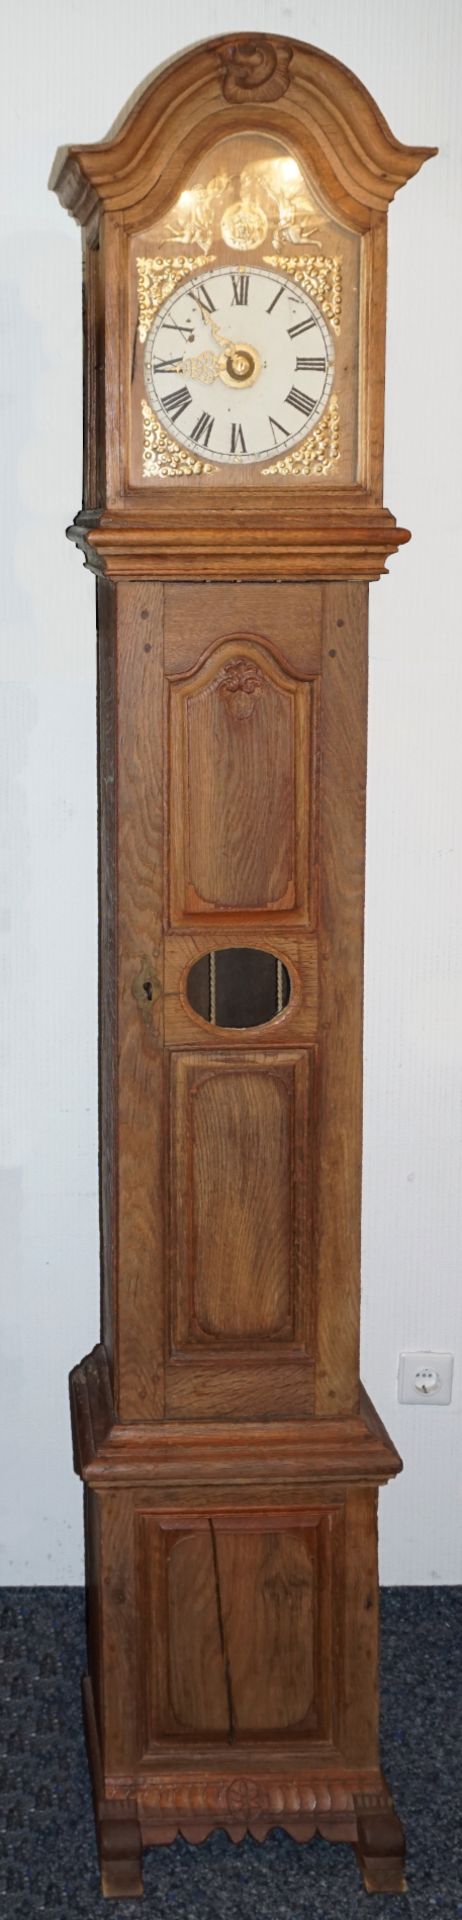 1 Standuhr wohl 18. Jh., Holz wohl Eiche mit Metallbeschlägen z.T. vergoldet, H ca. 218cm, 2 Gewicht